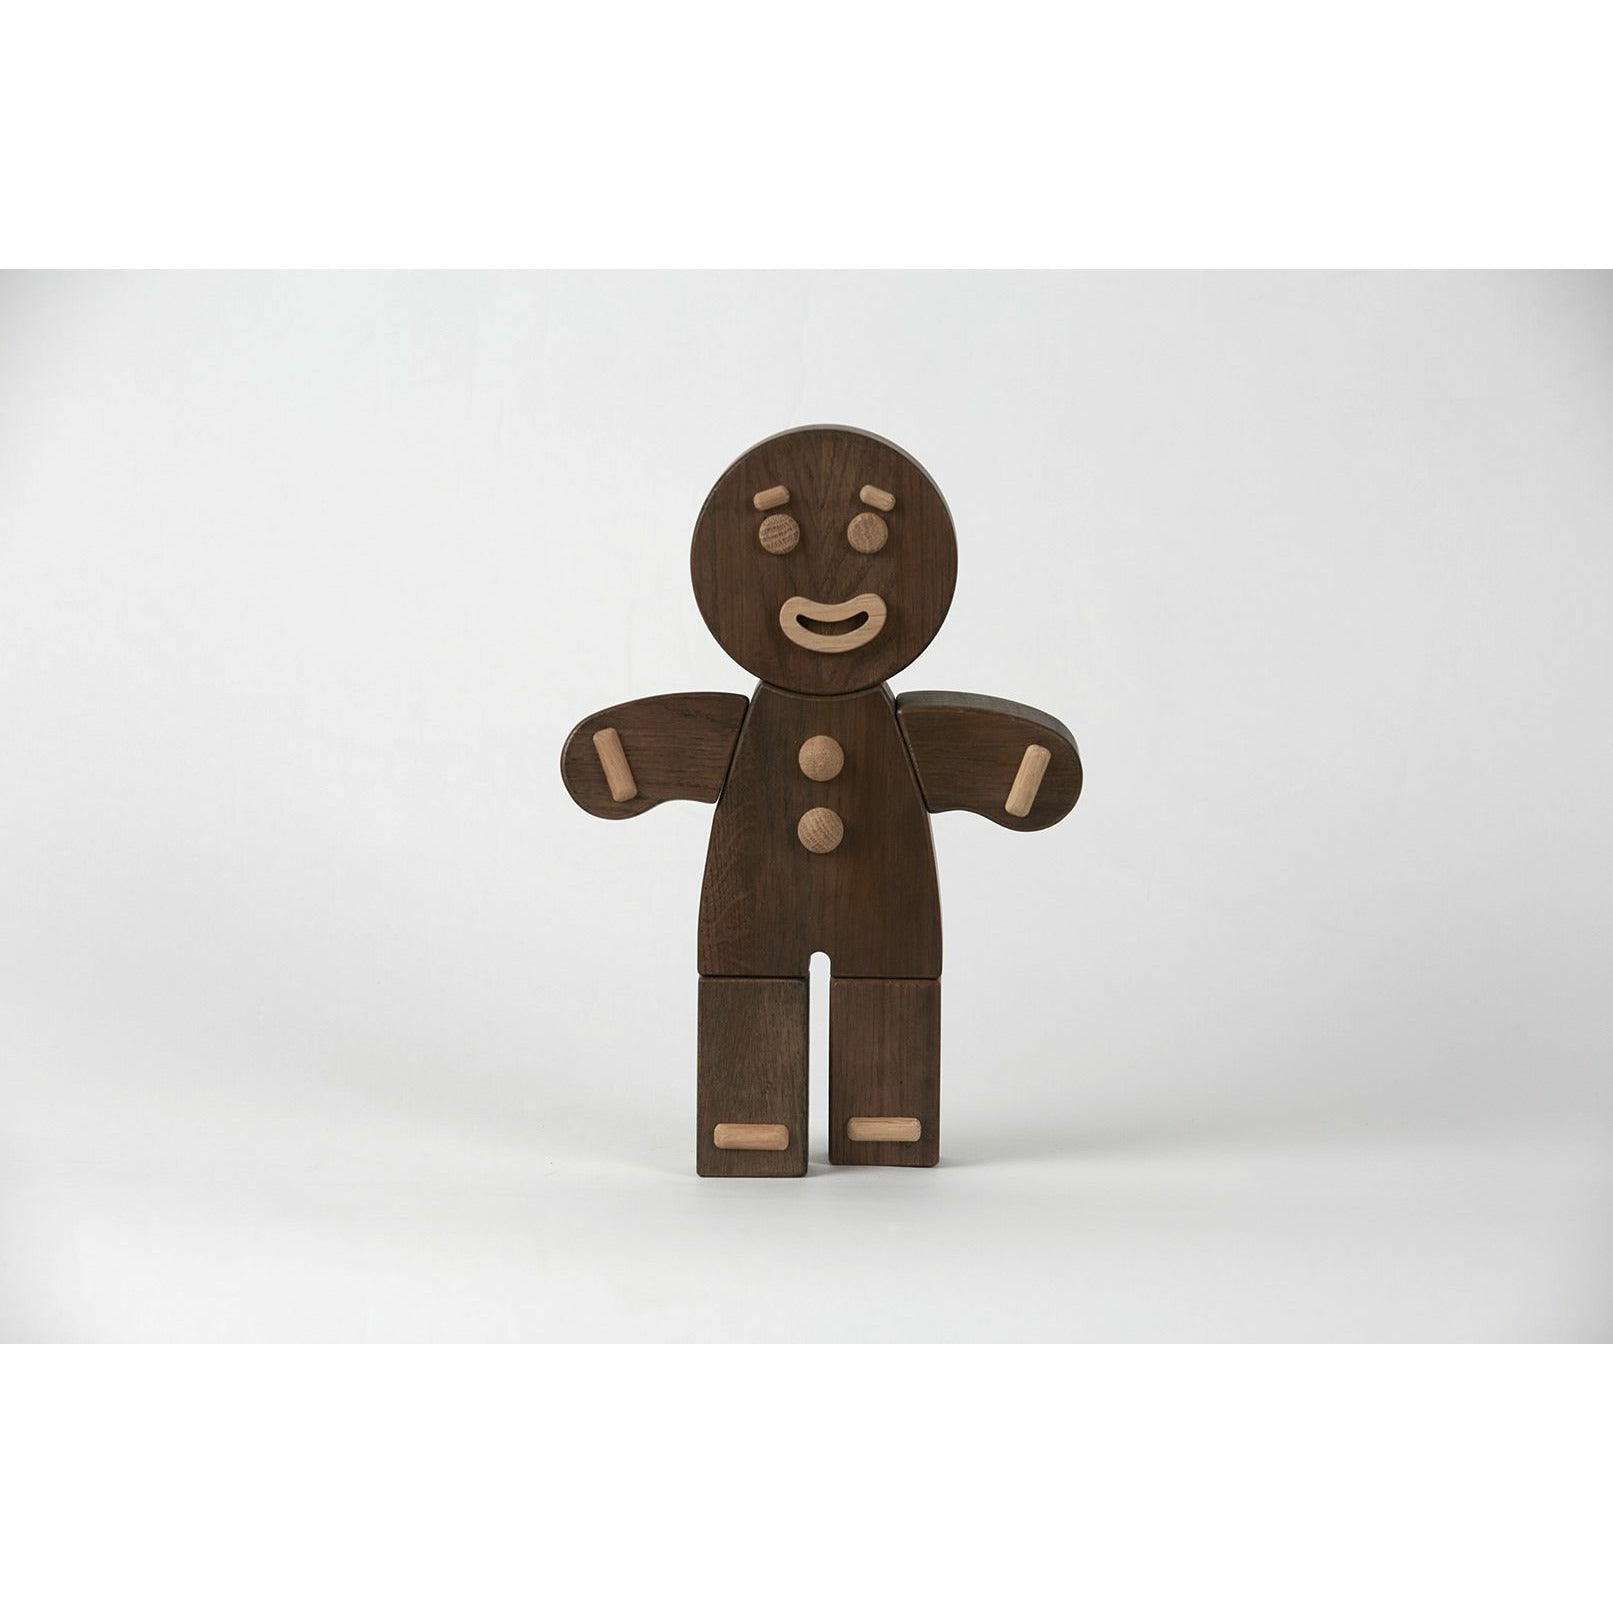 Boyhood Gingerbread Man Wooden Figure, Oak Stained, Small